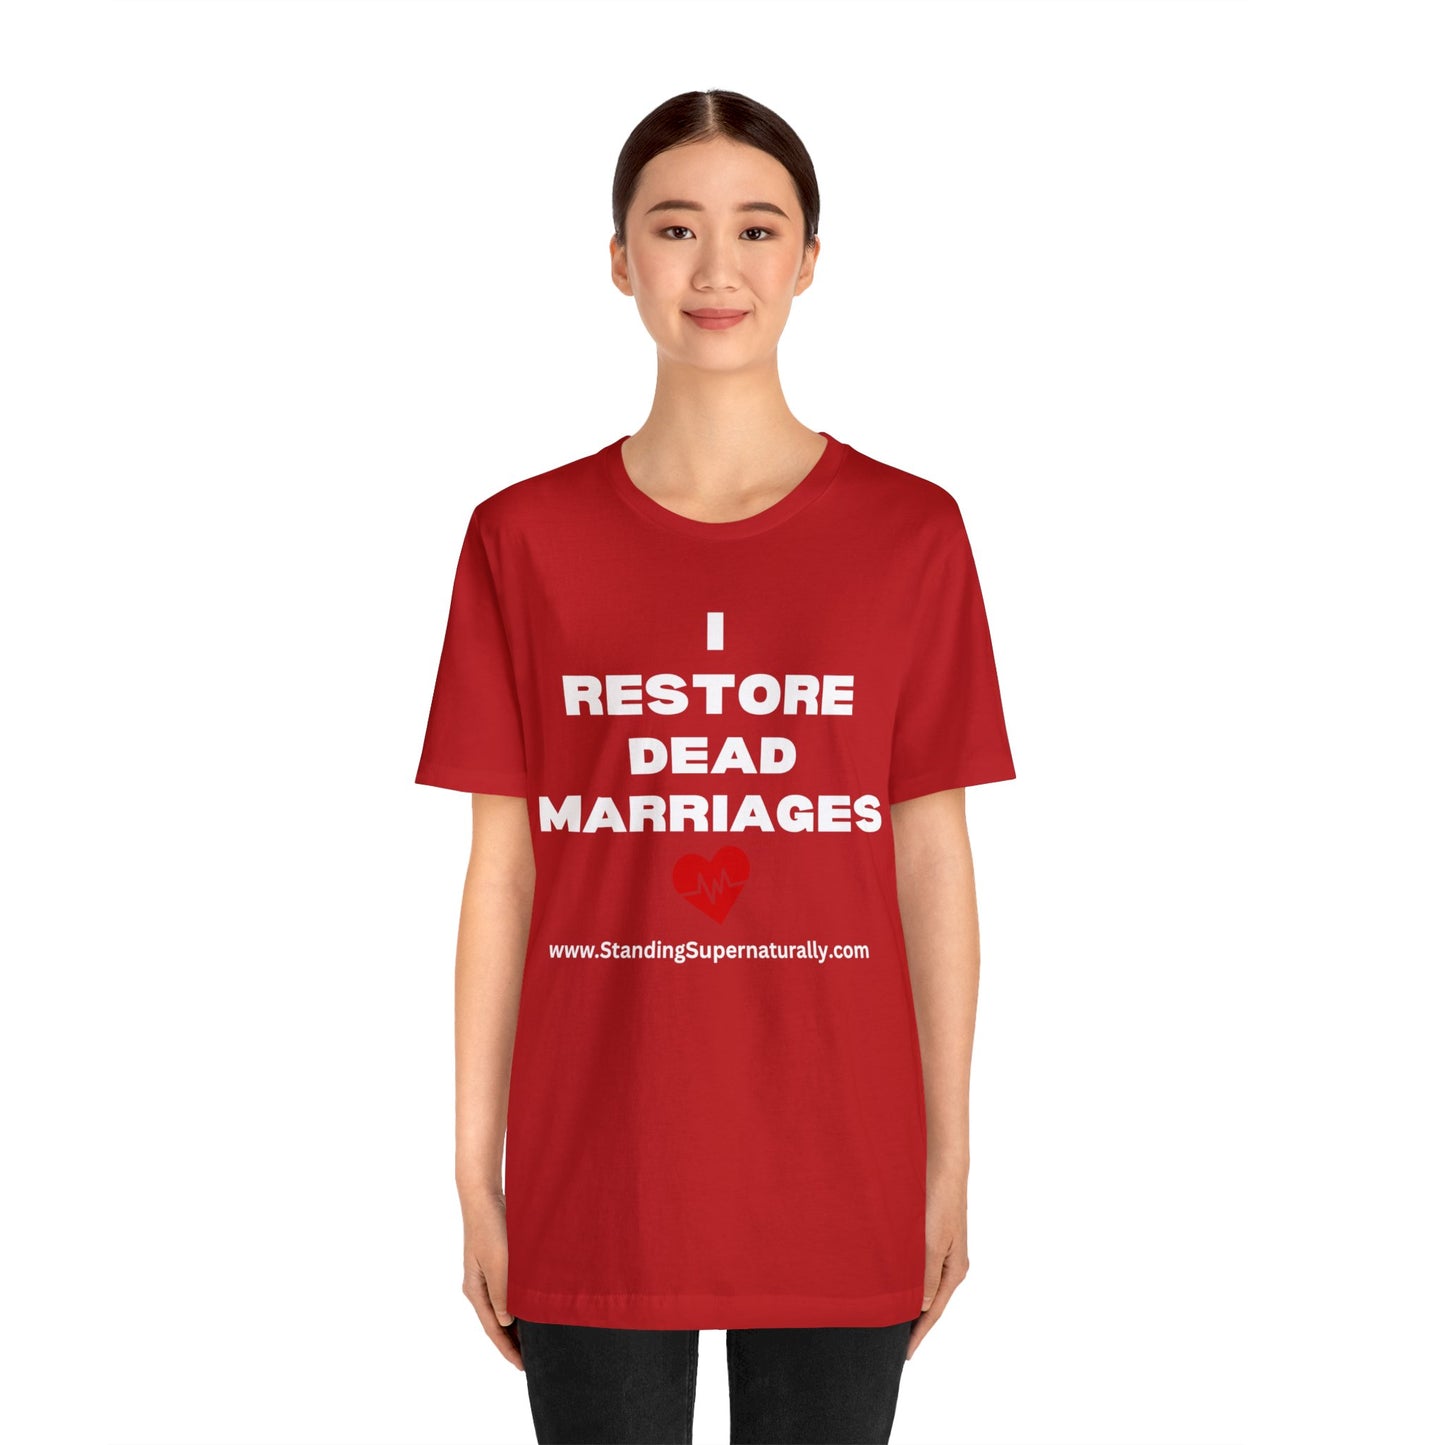 I Restore Dead Marriages - T Shirt